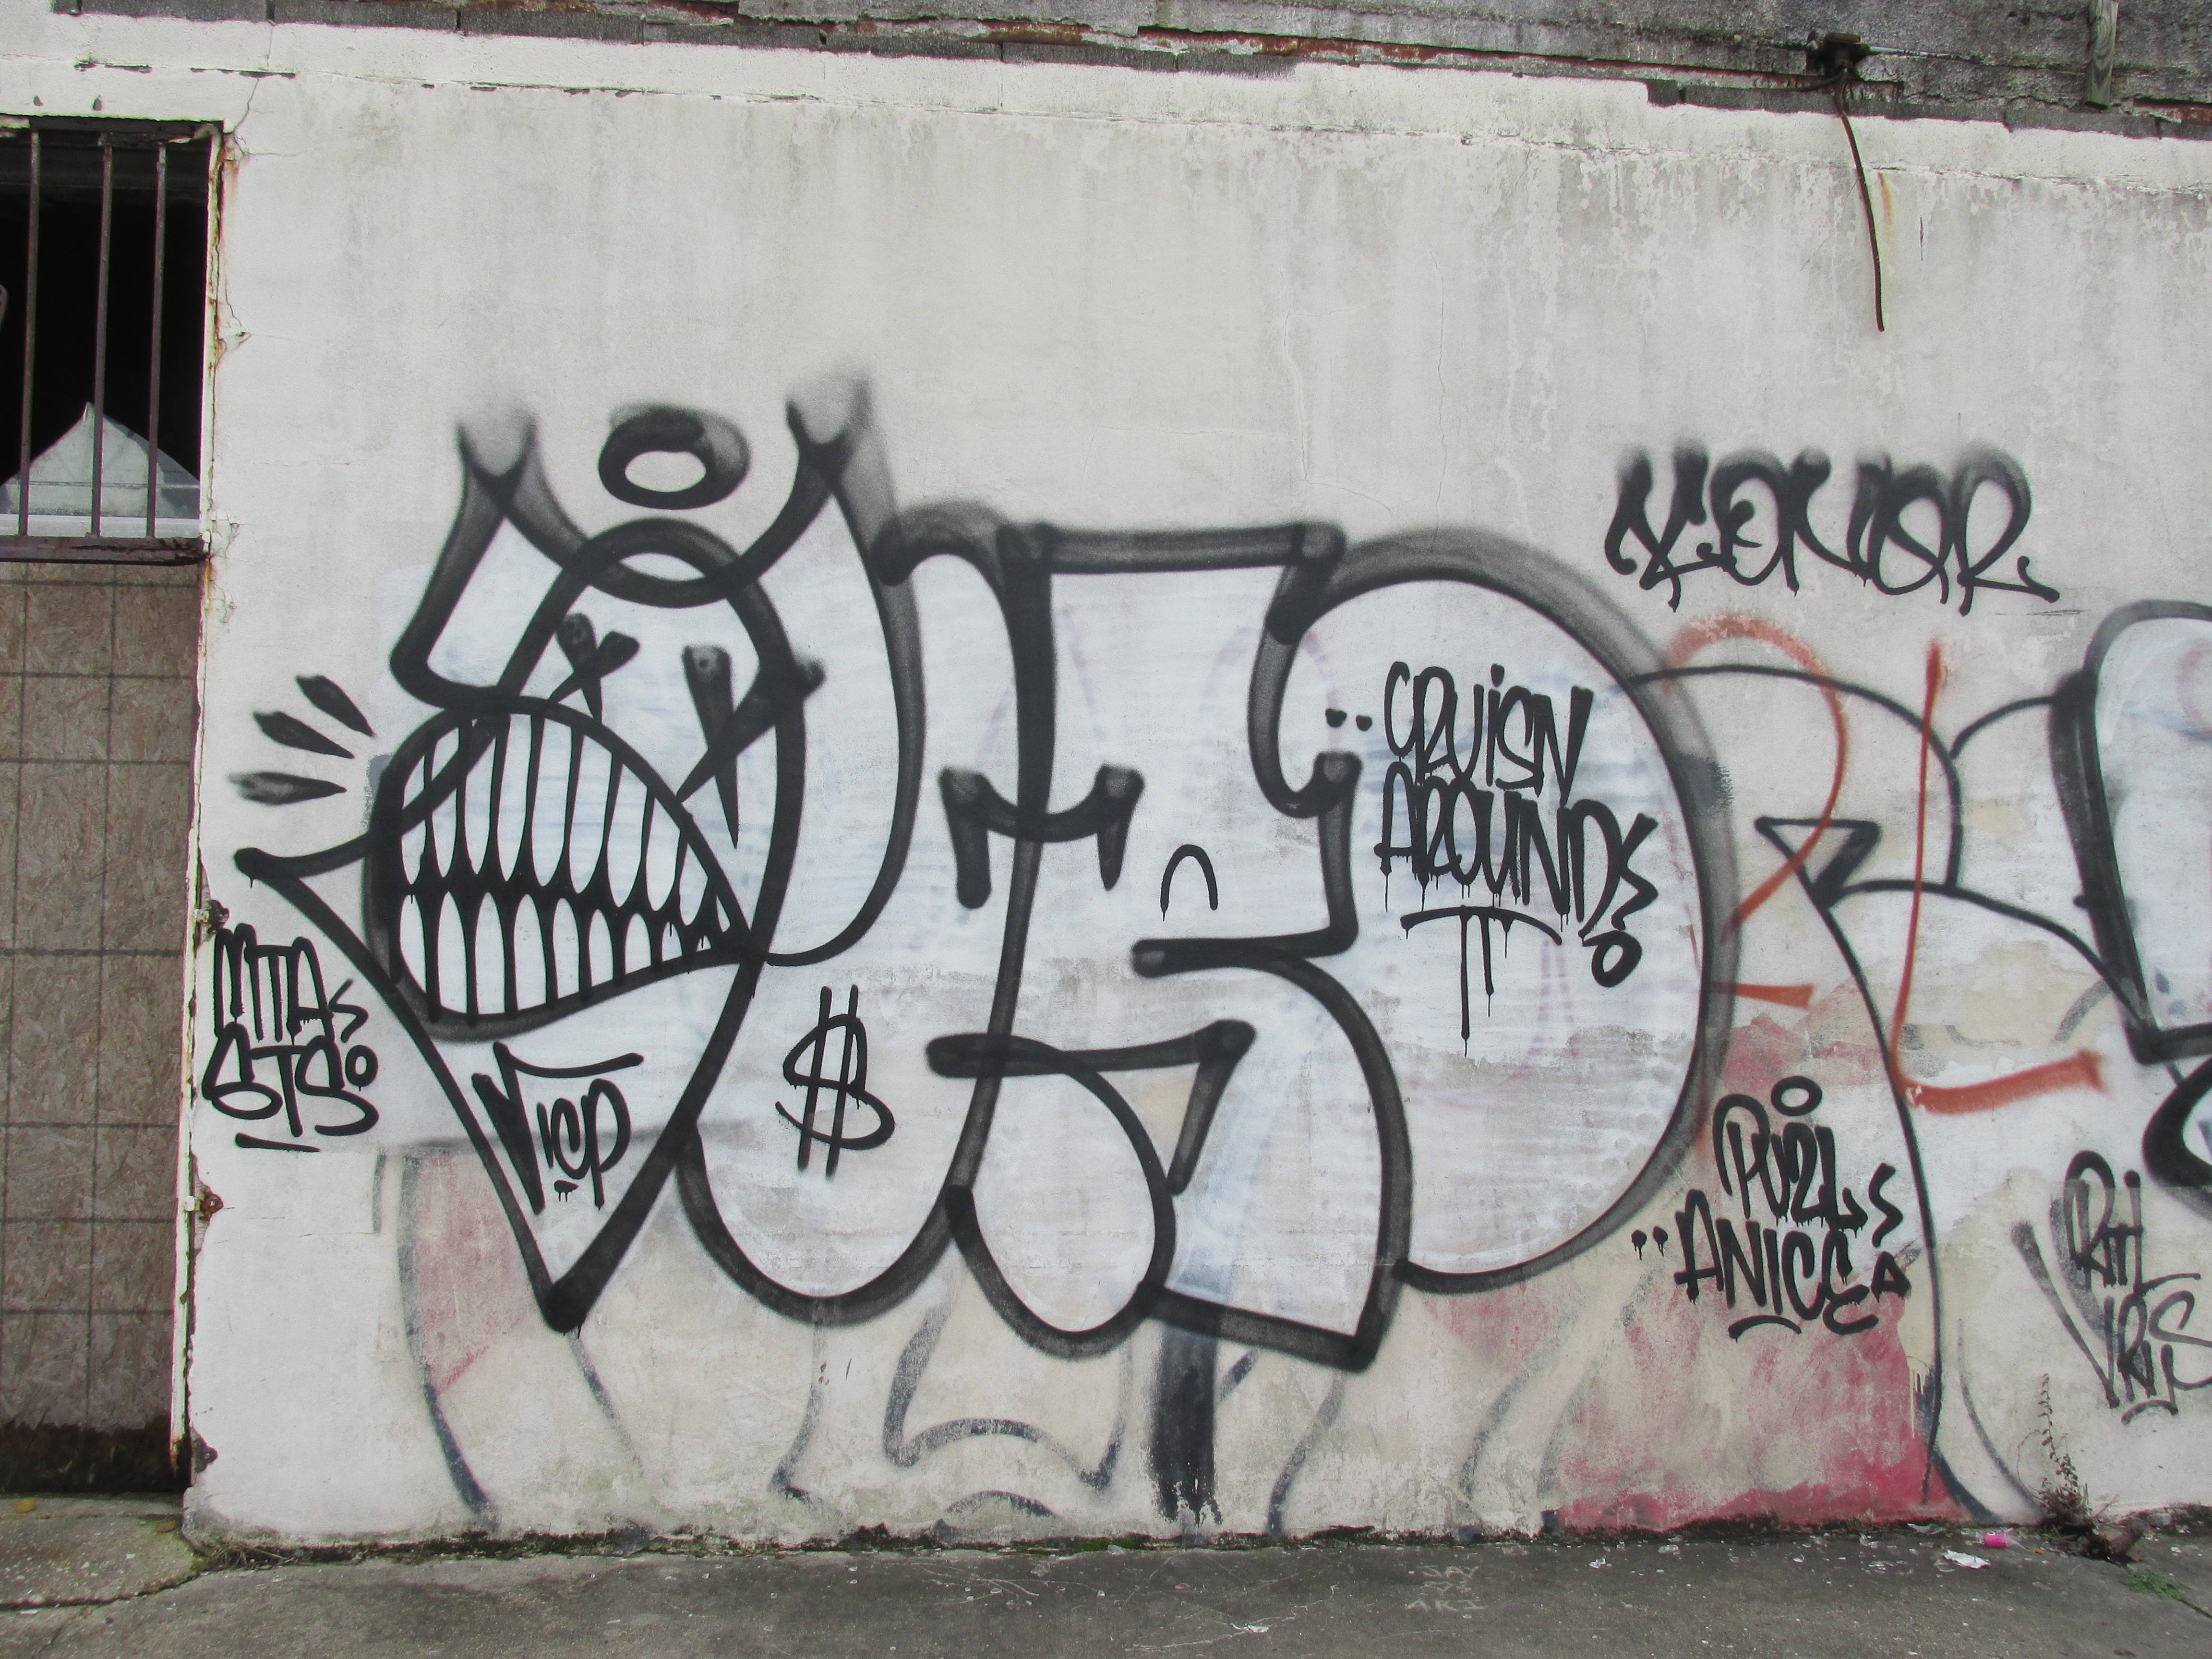 Теги районов. Теги граффити. Уличные надписи на стенах. Надписи на стенах граффити. Надписи на стенах Теги.